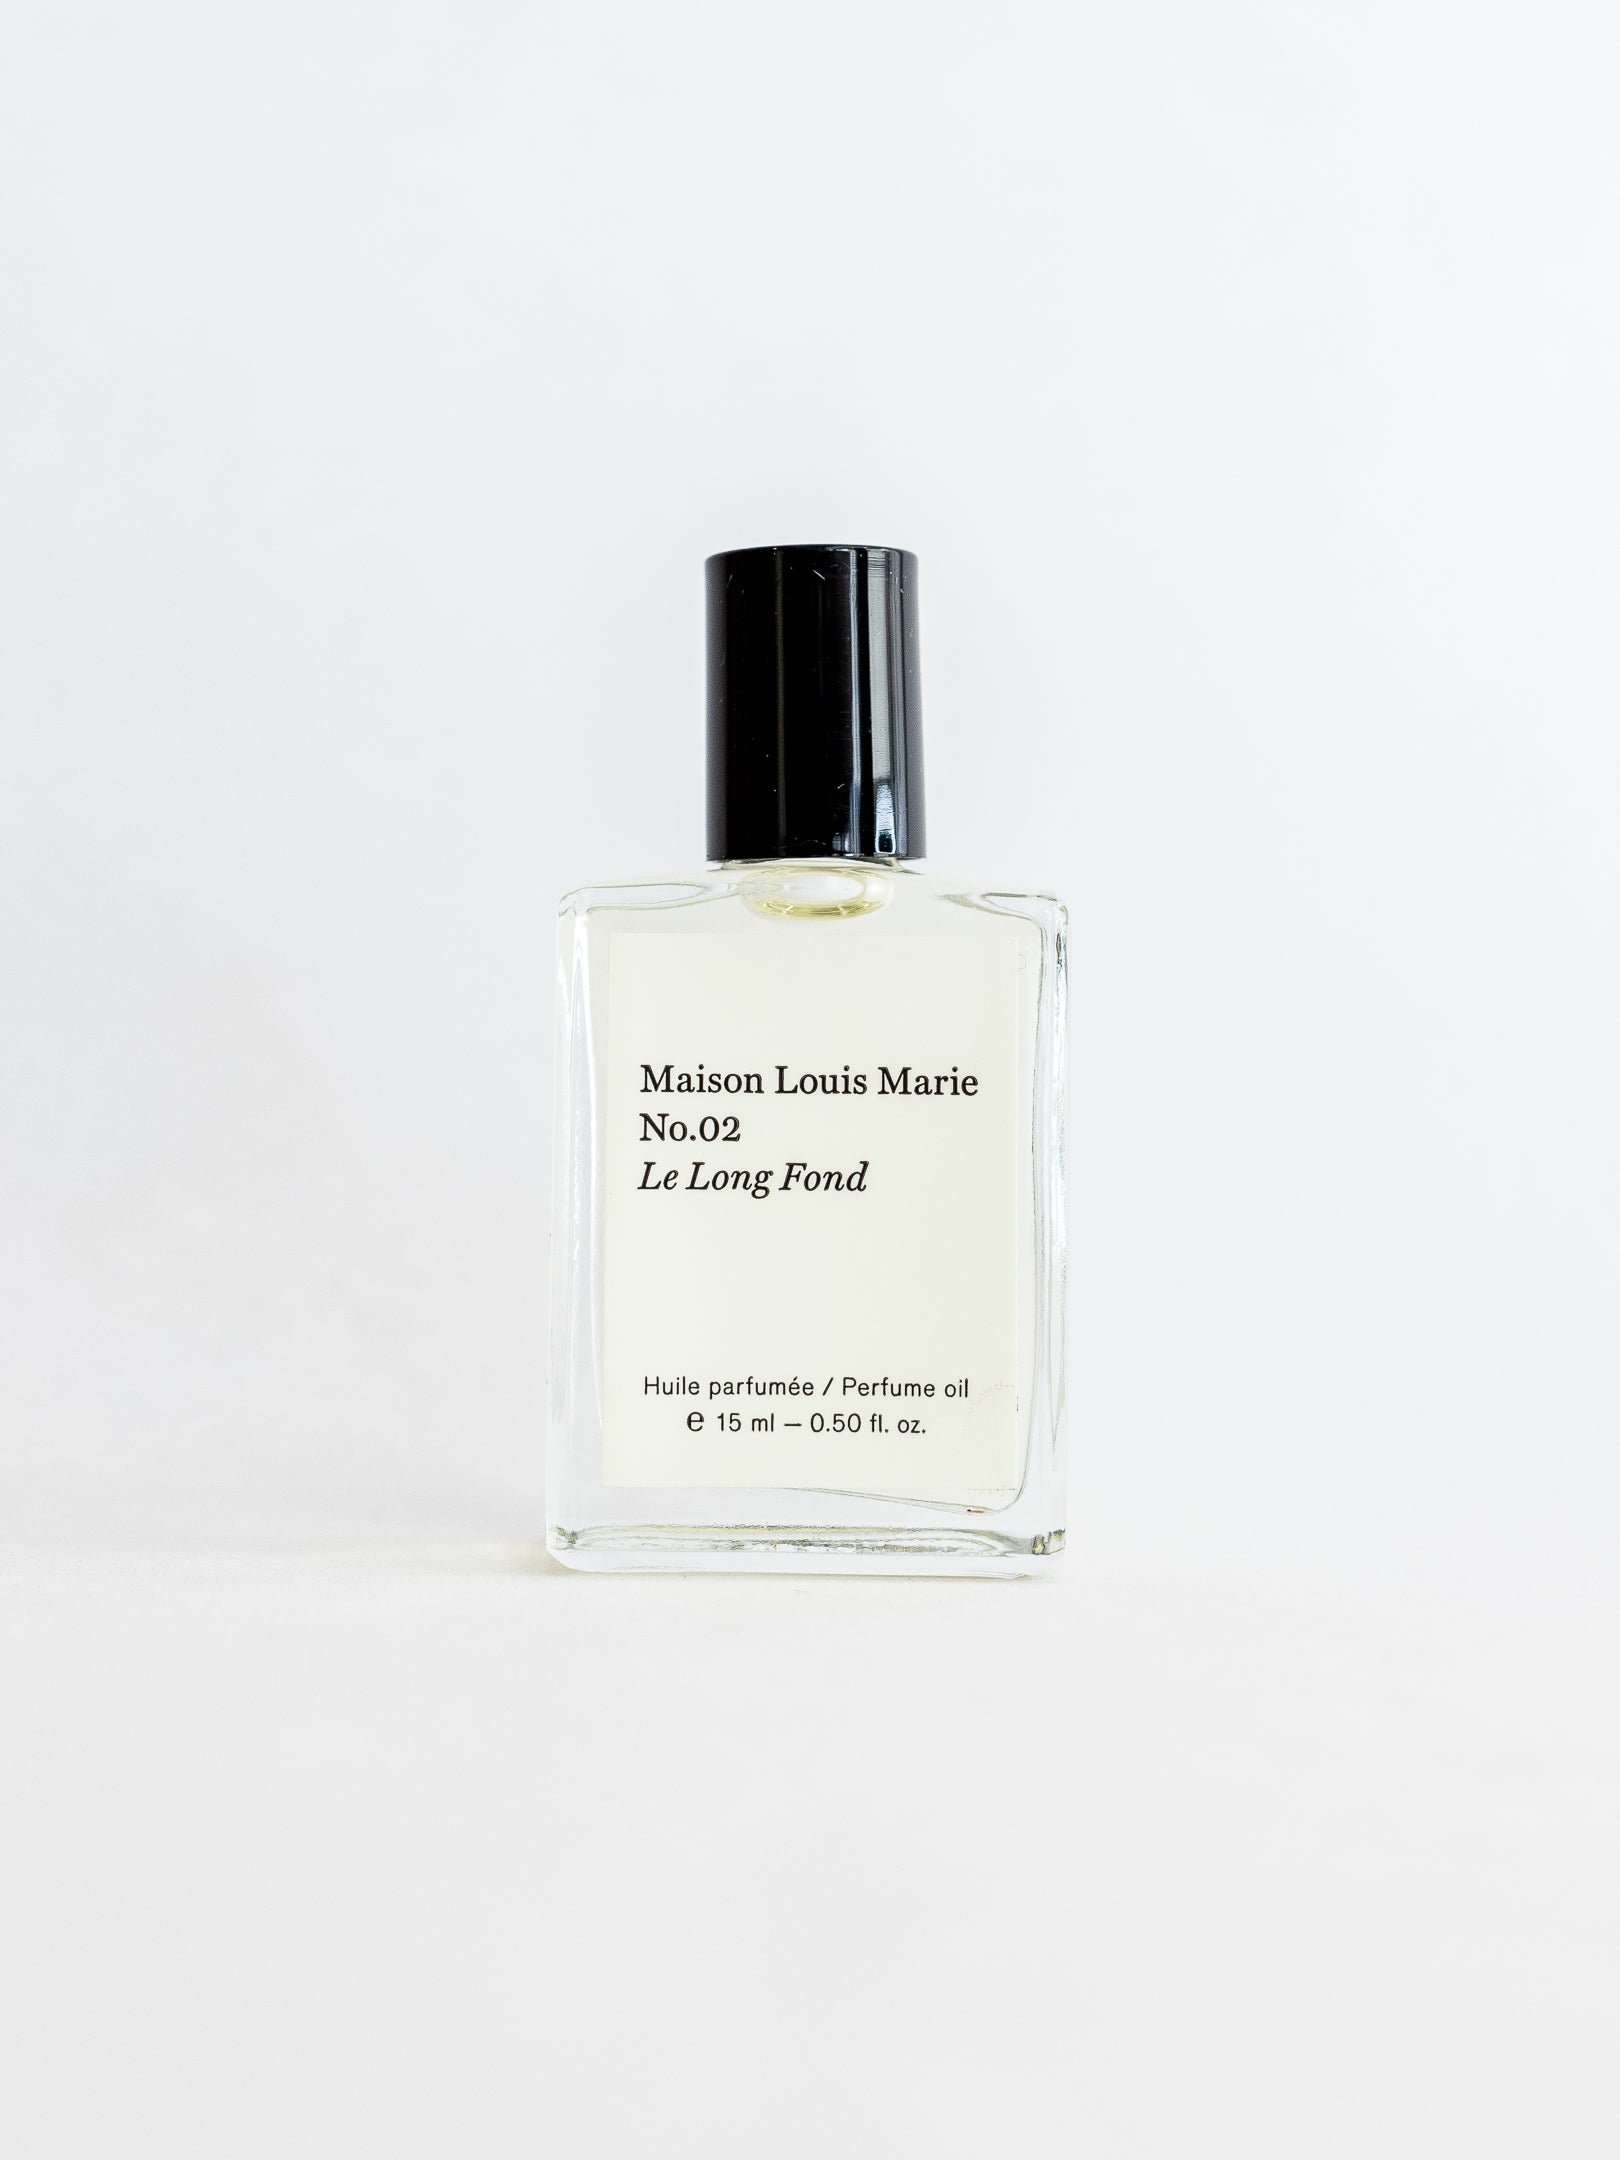 Maison Louis Marie no. 02 Le Long Fond Perfume Oil